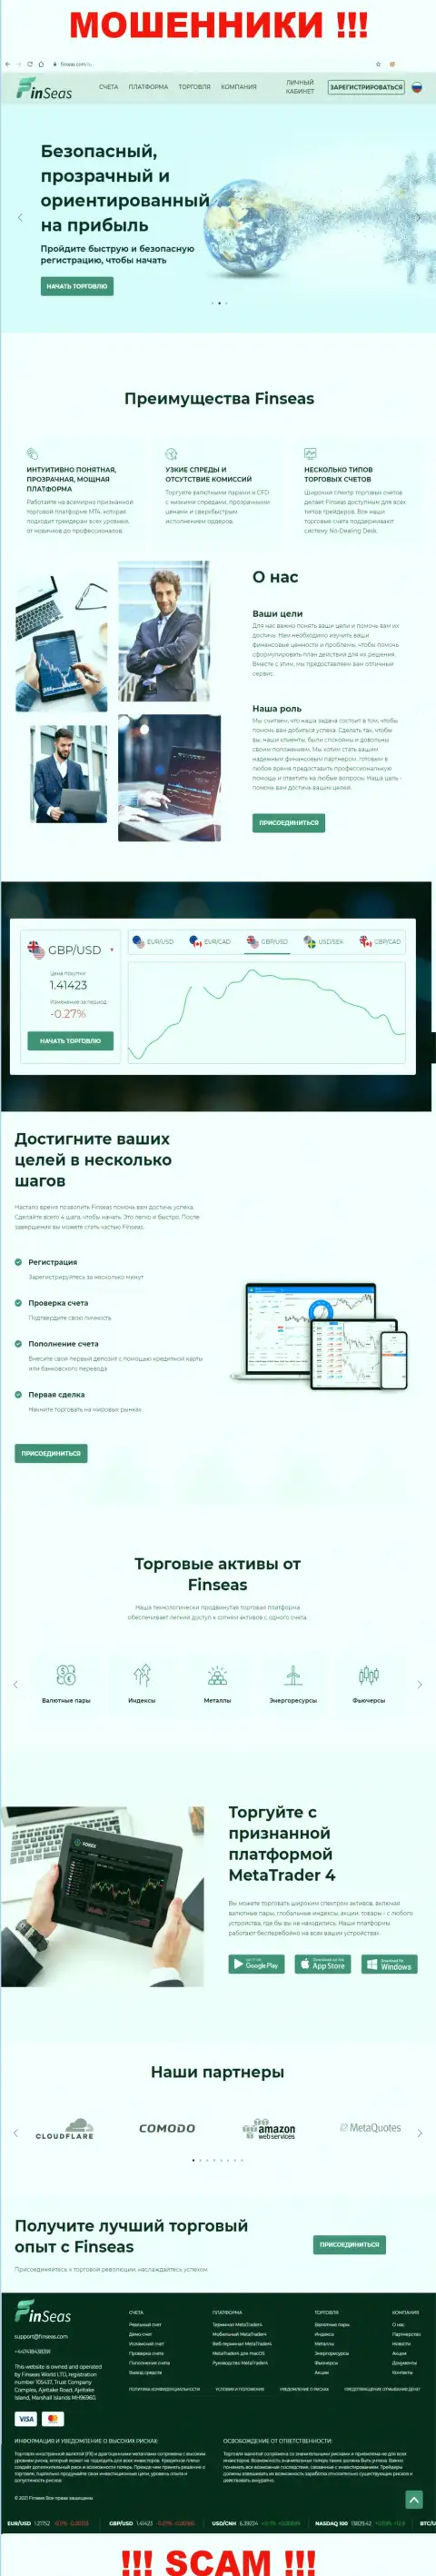 Сайт организации ФинСиас, заполненный фейковой инфой